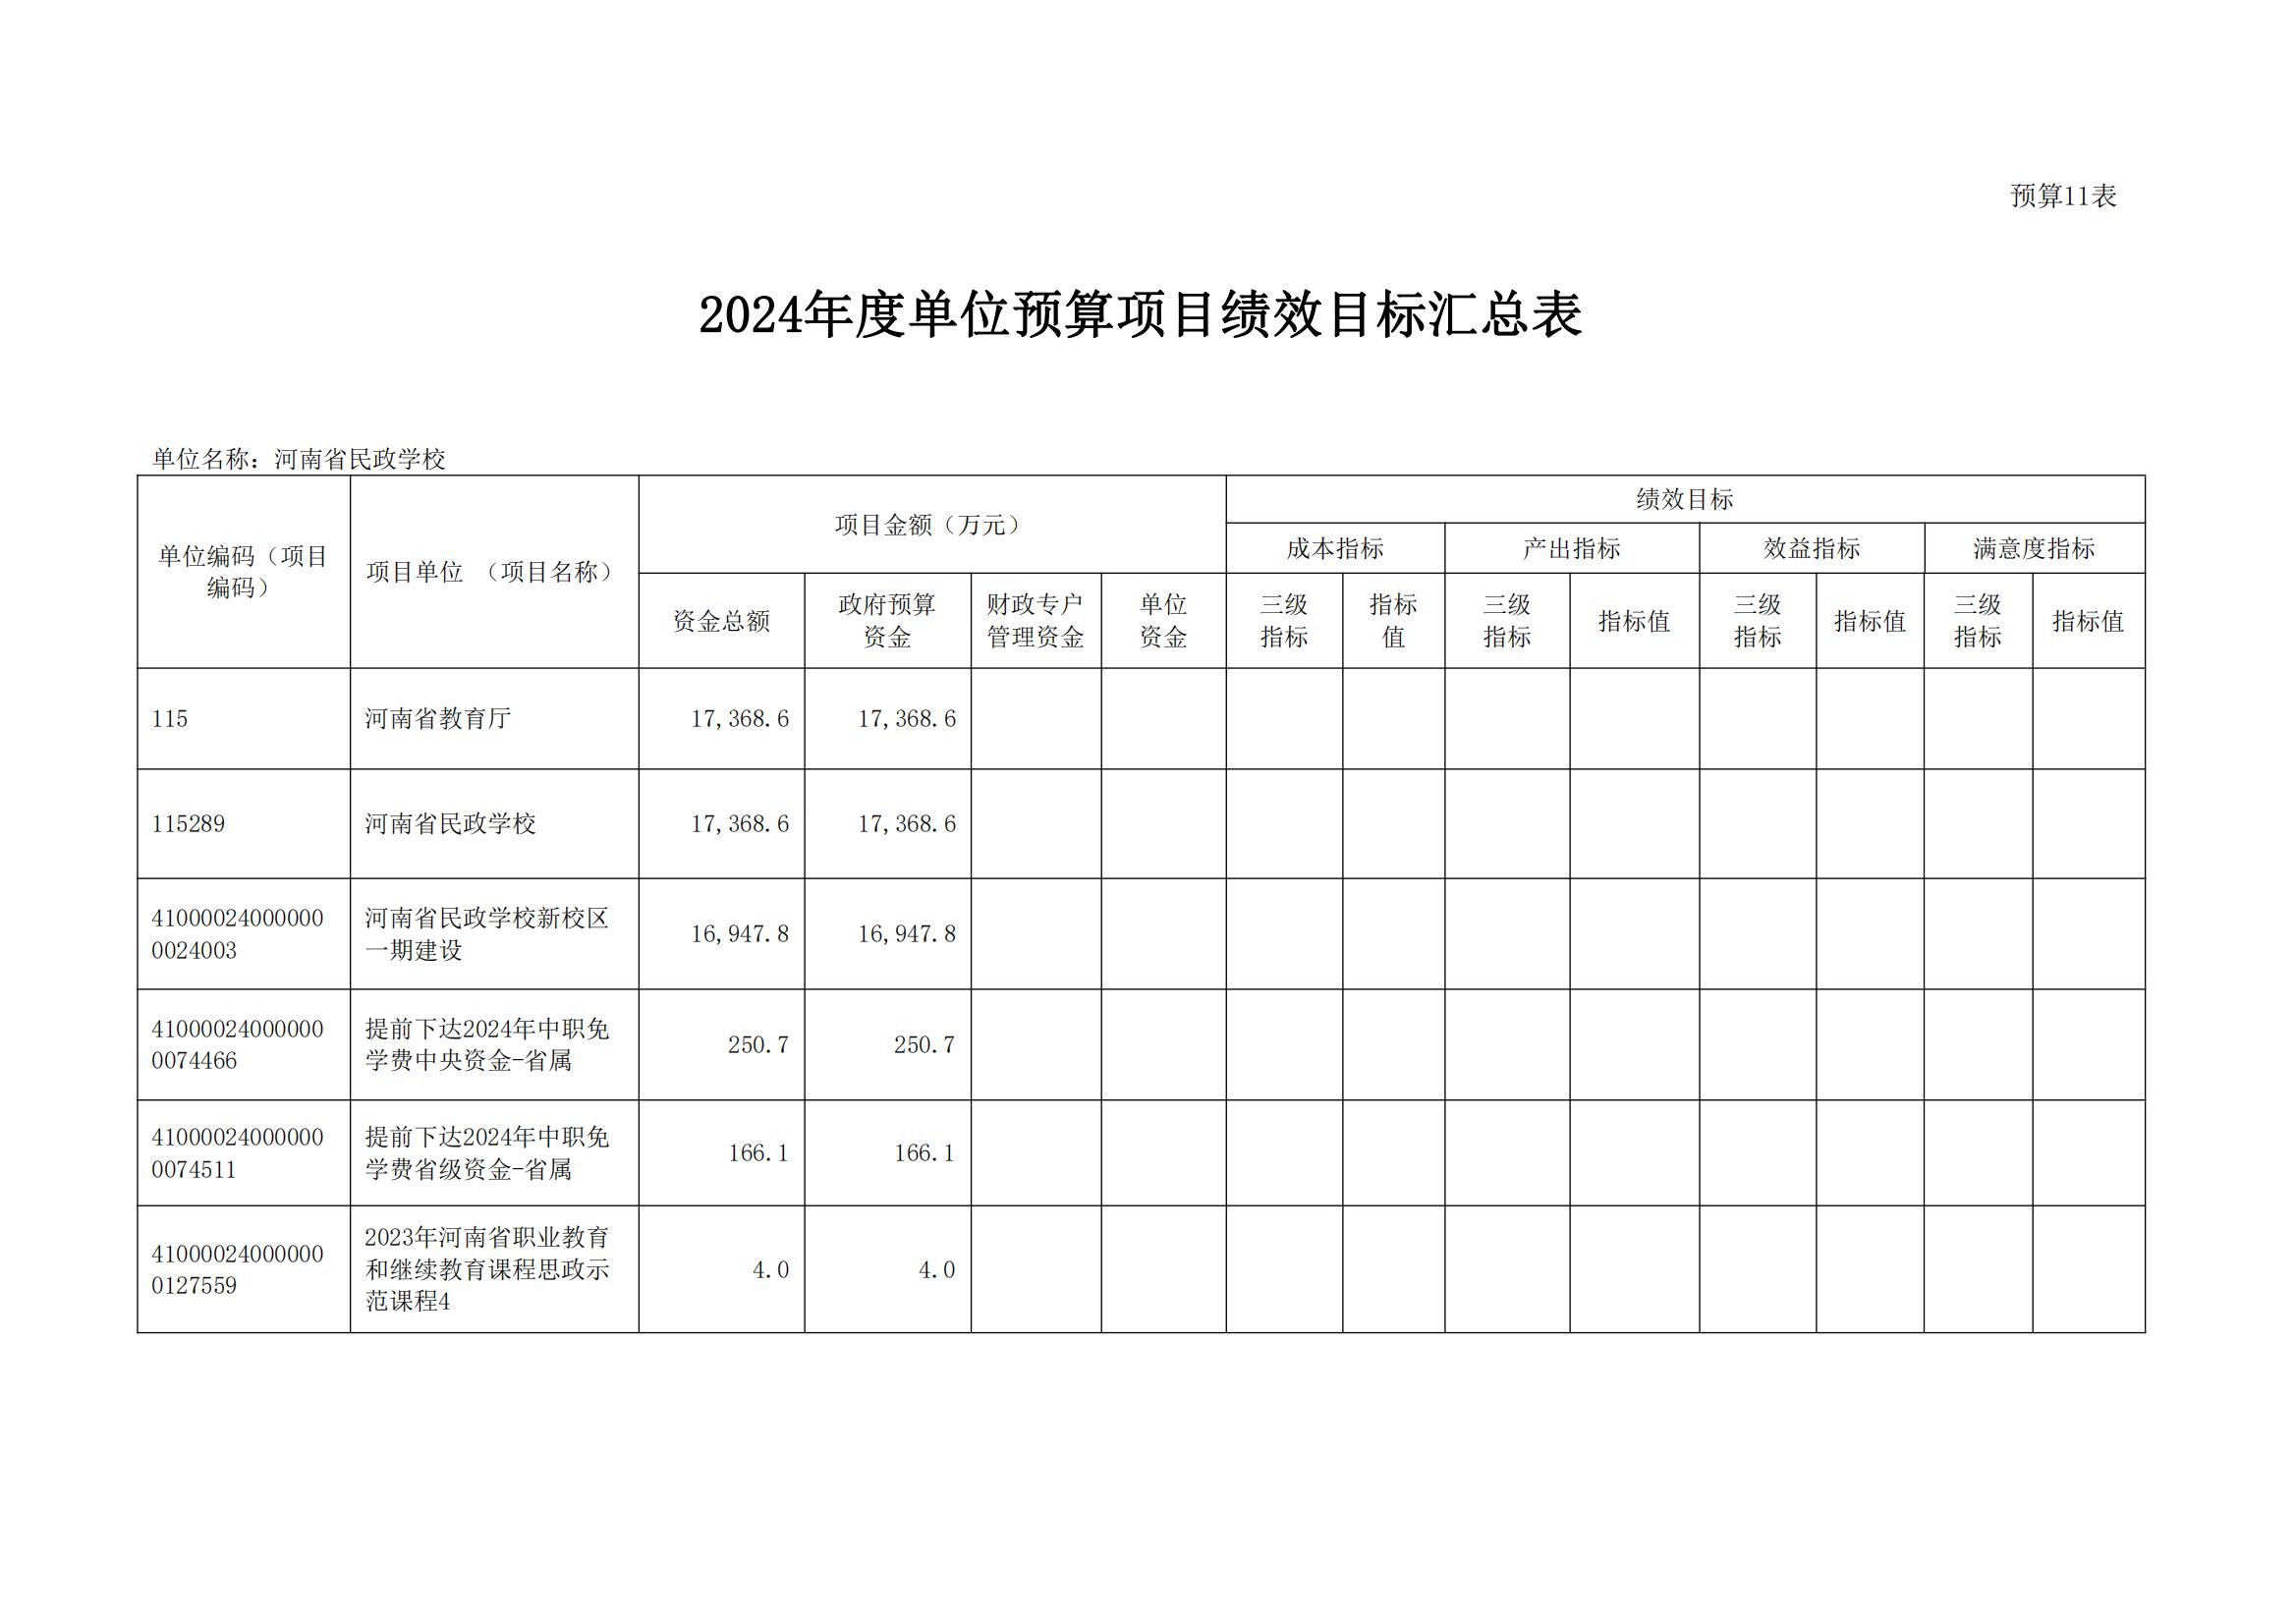 河南省民政学校2024年部门预算公开(1)_21.jpg